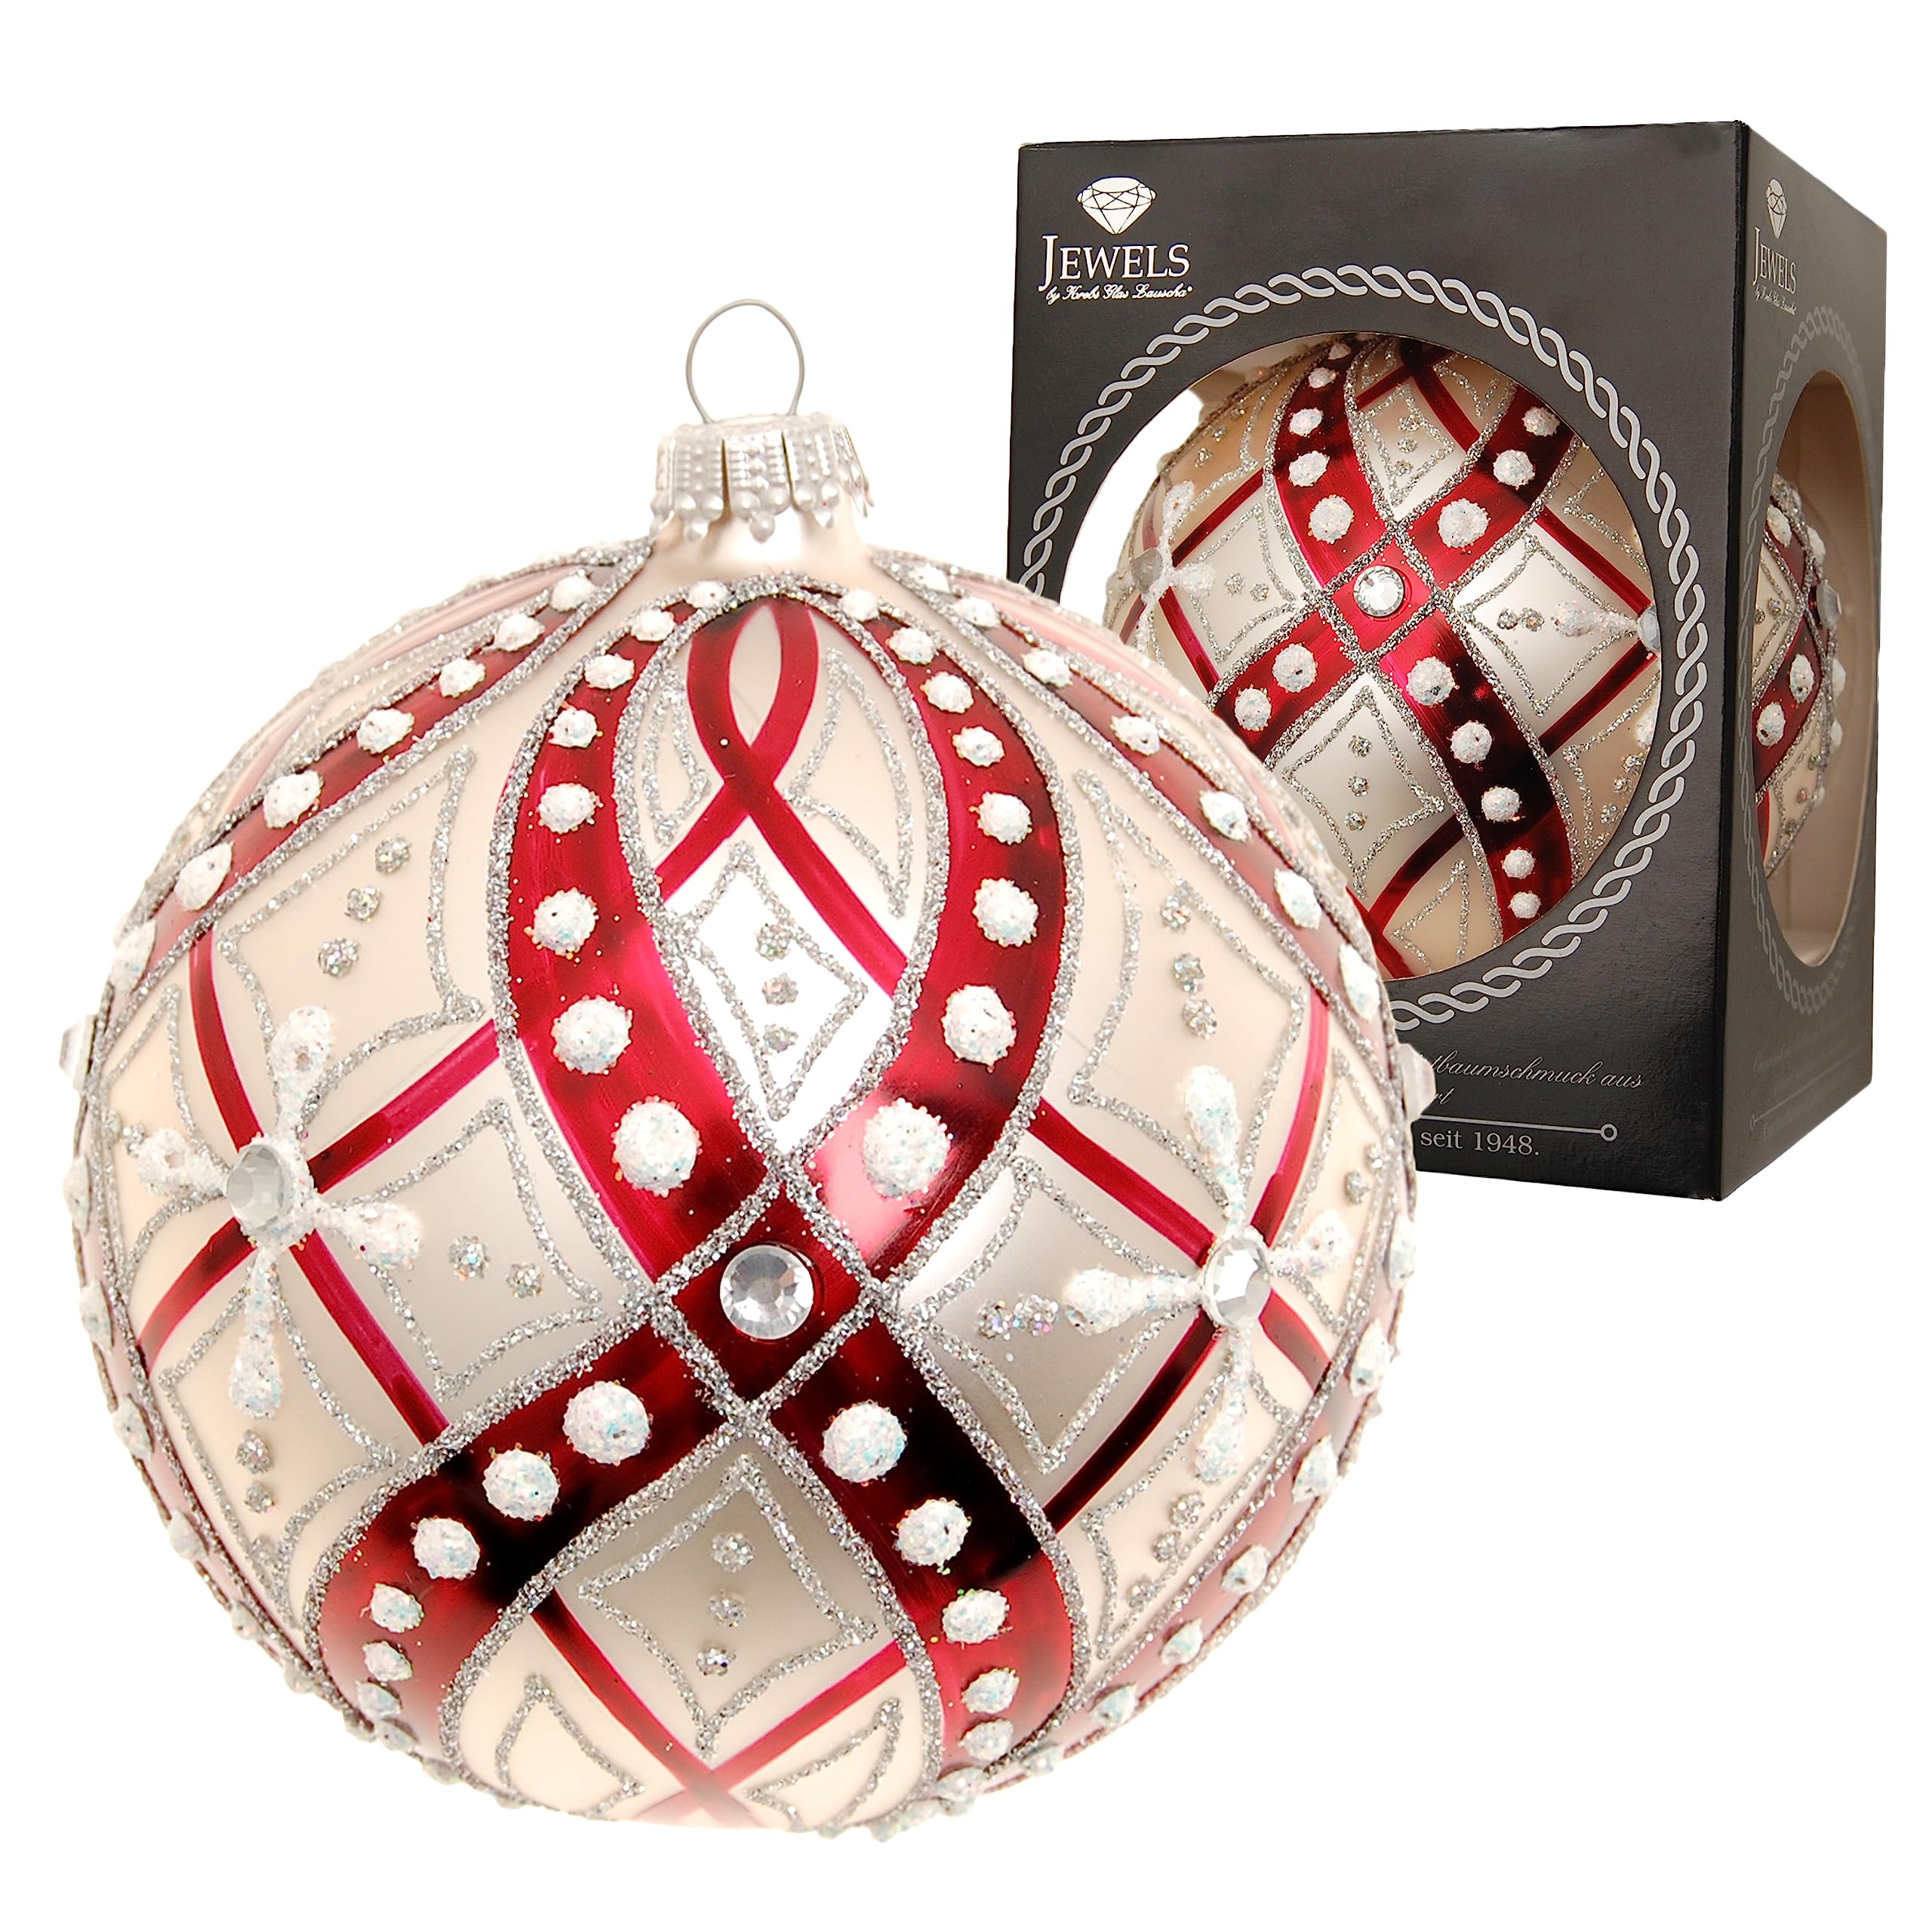 Krebs Glas Lauscha - Weihnachtsdekoration/Christbaumschmuck aus Glas - Weihnachtskugeln - Farbe: Rot/Silber - Verziert mit Strasssteinen - Größe: 10 cm